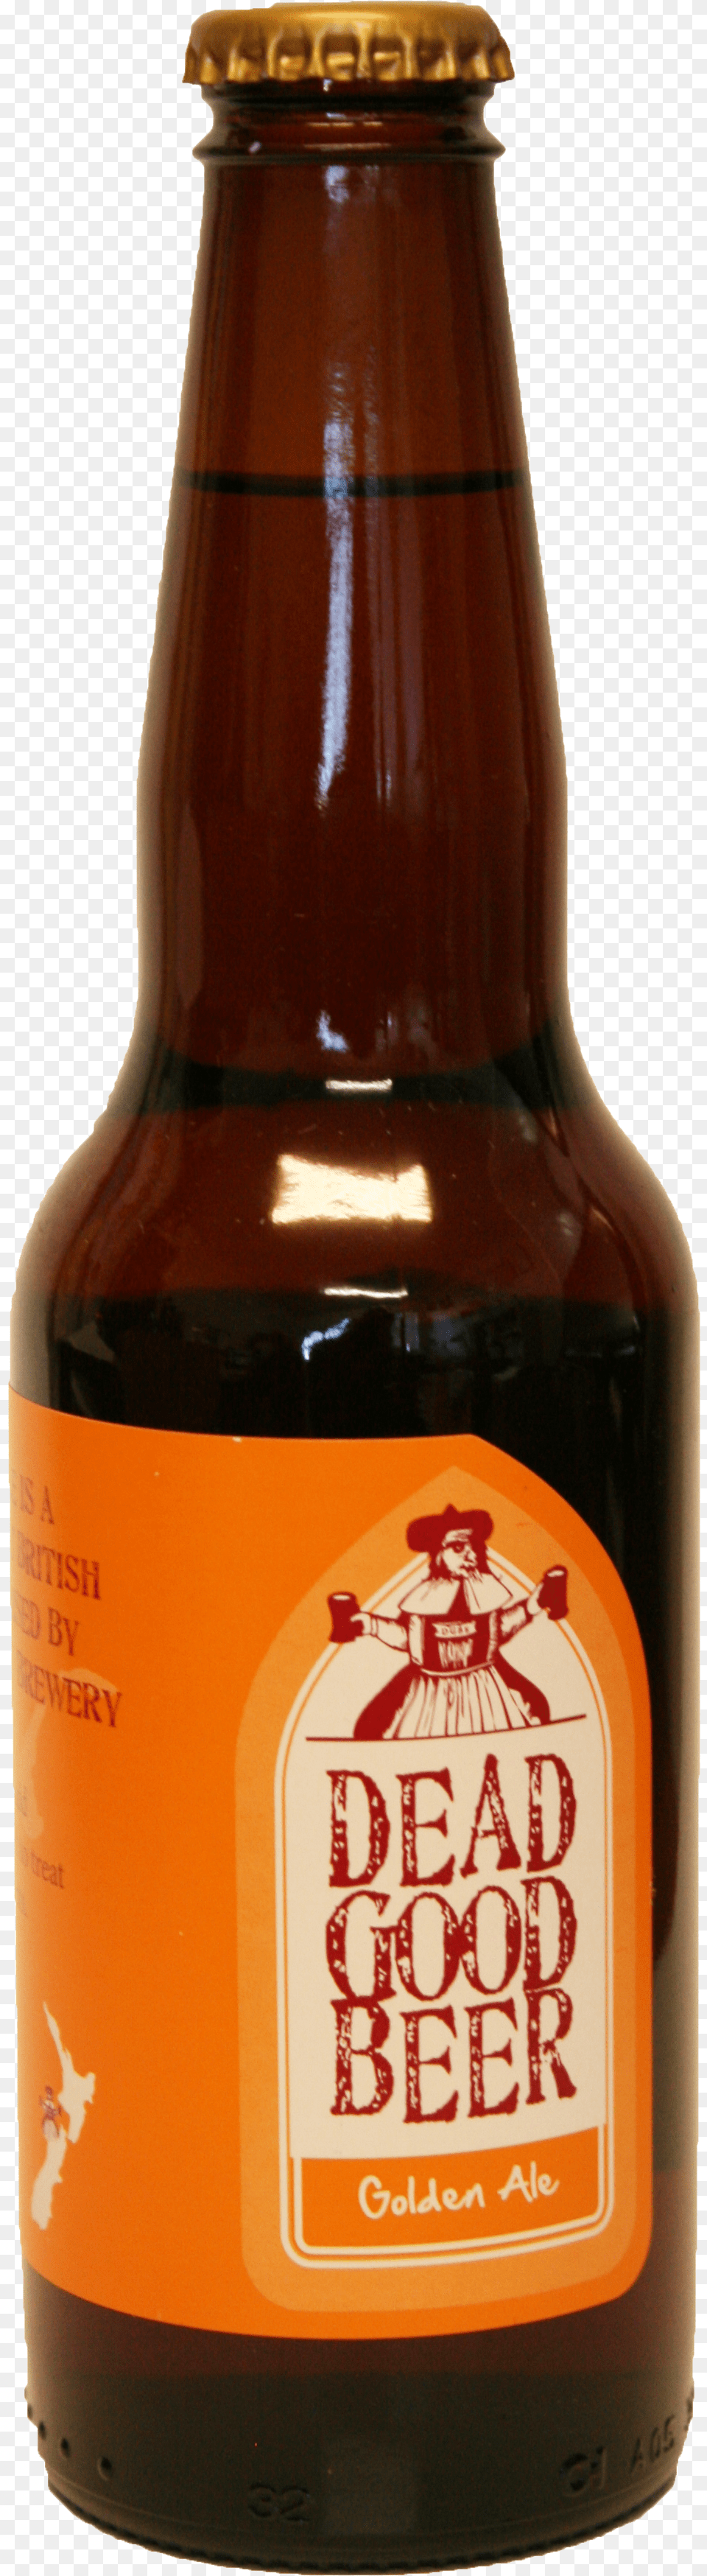 Beer Bottle Image Butilka Piva Na Prozrachnom Fone Free Png Download